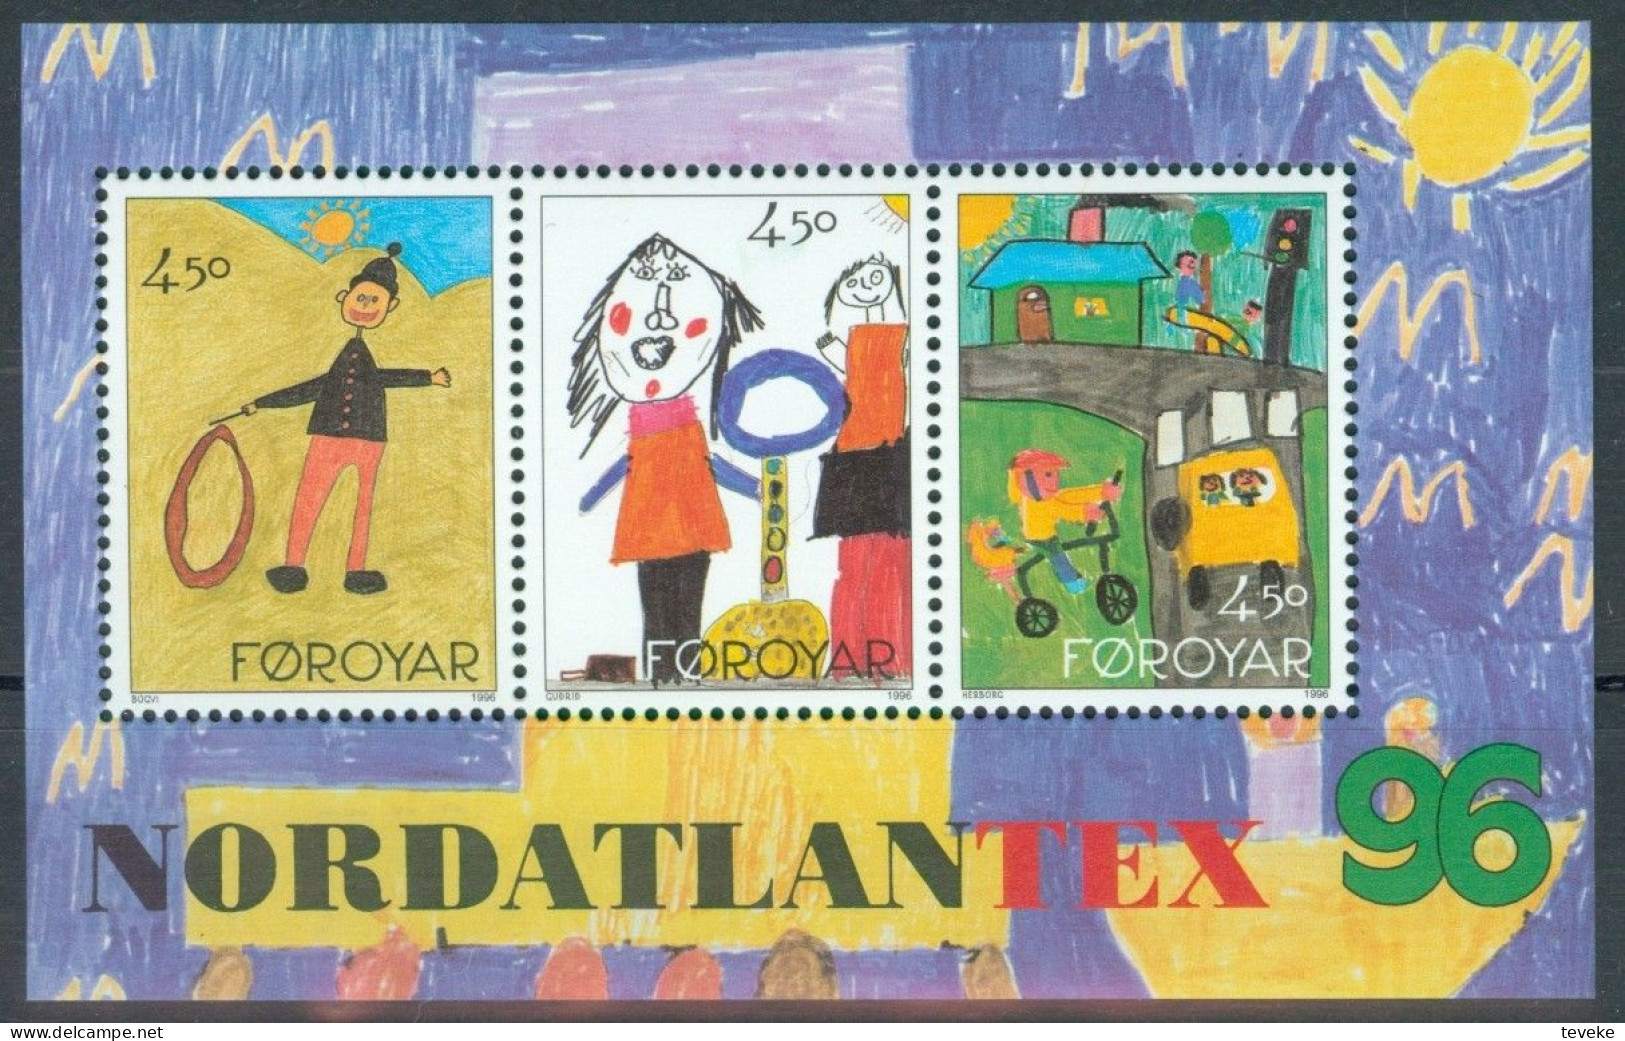 FAEROËR 1996 - MiNr. BL 8 - **/MNH - Stamp Exhibition NORDATLANTEX '96, Tórshavn - Faeroër